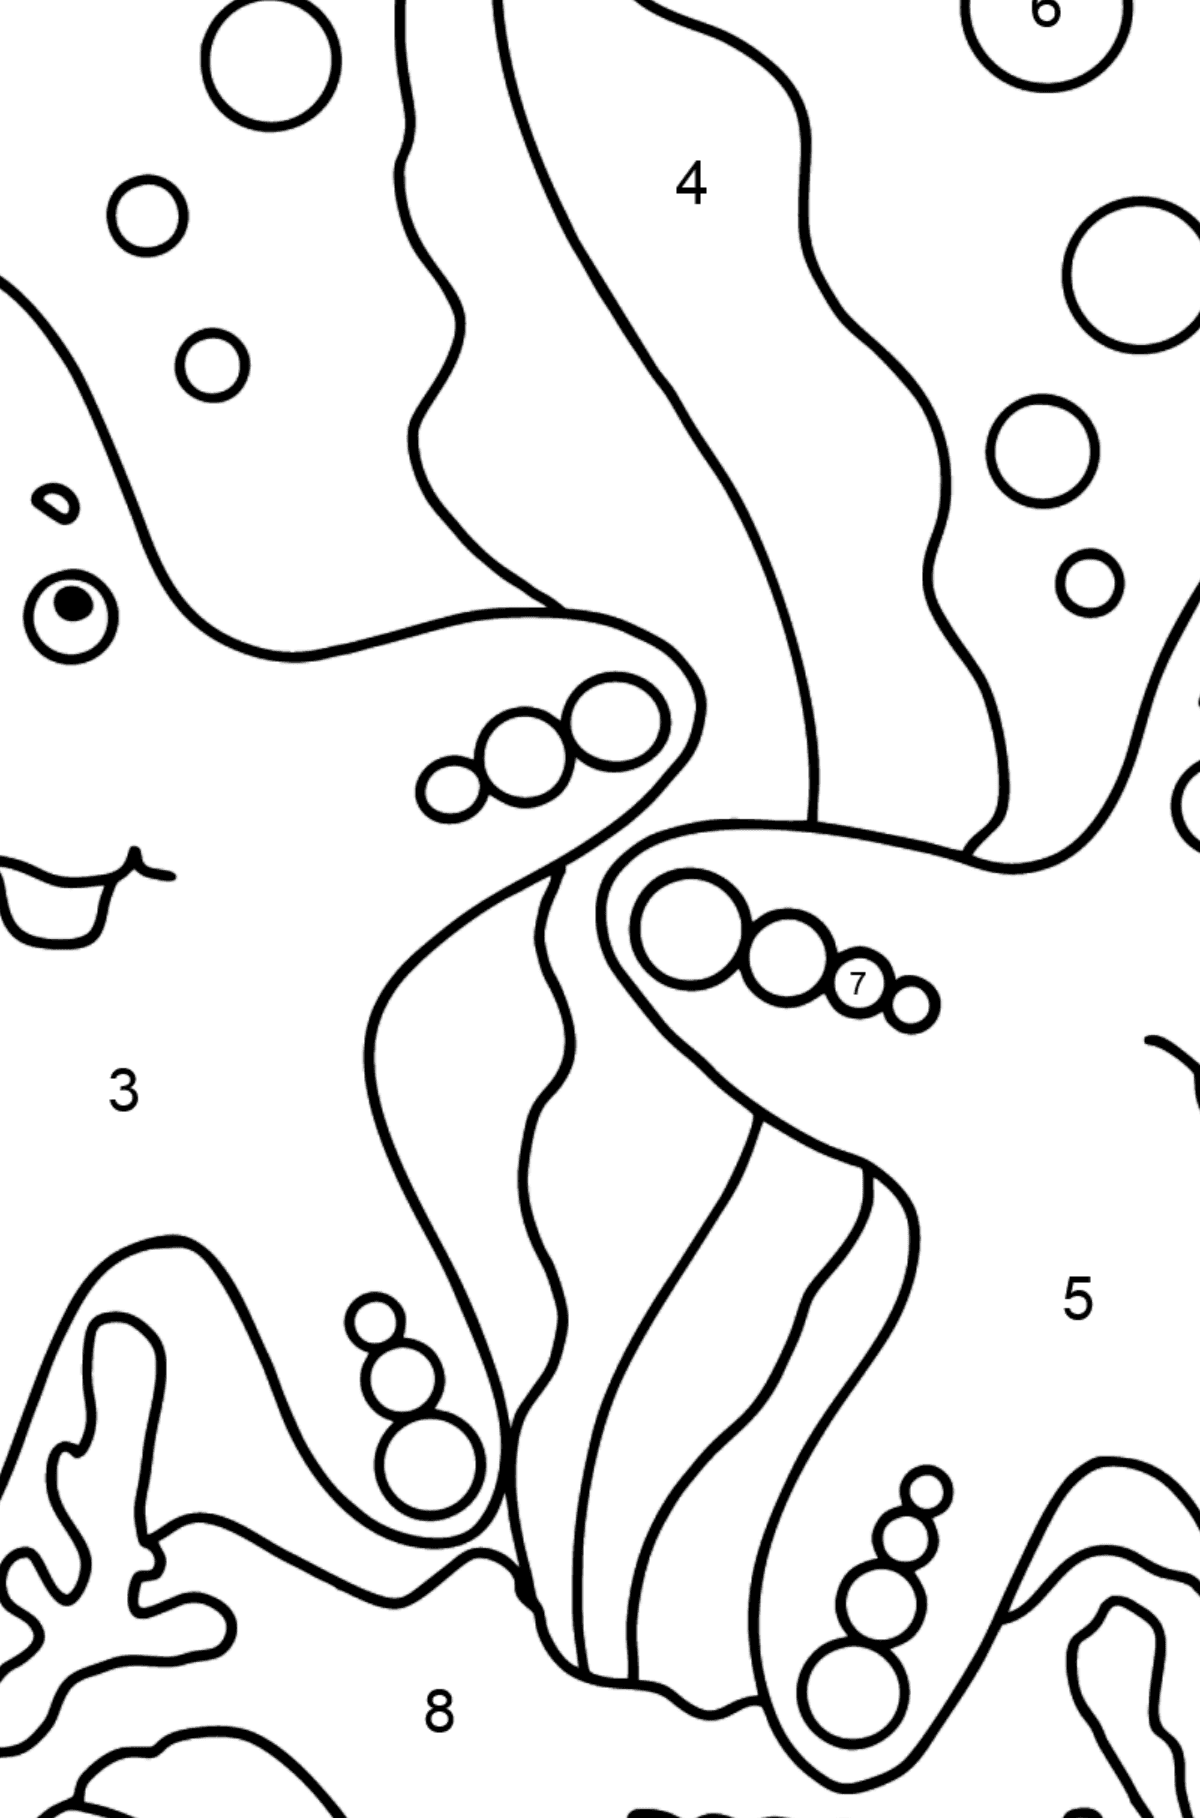 Dibujo para colorear Dos estrellas de mar (fácil) - Colorear por Números para Niños